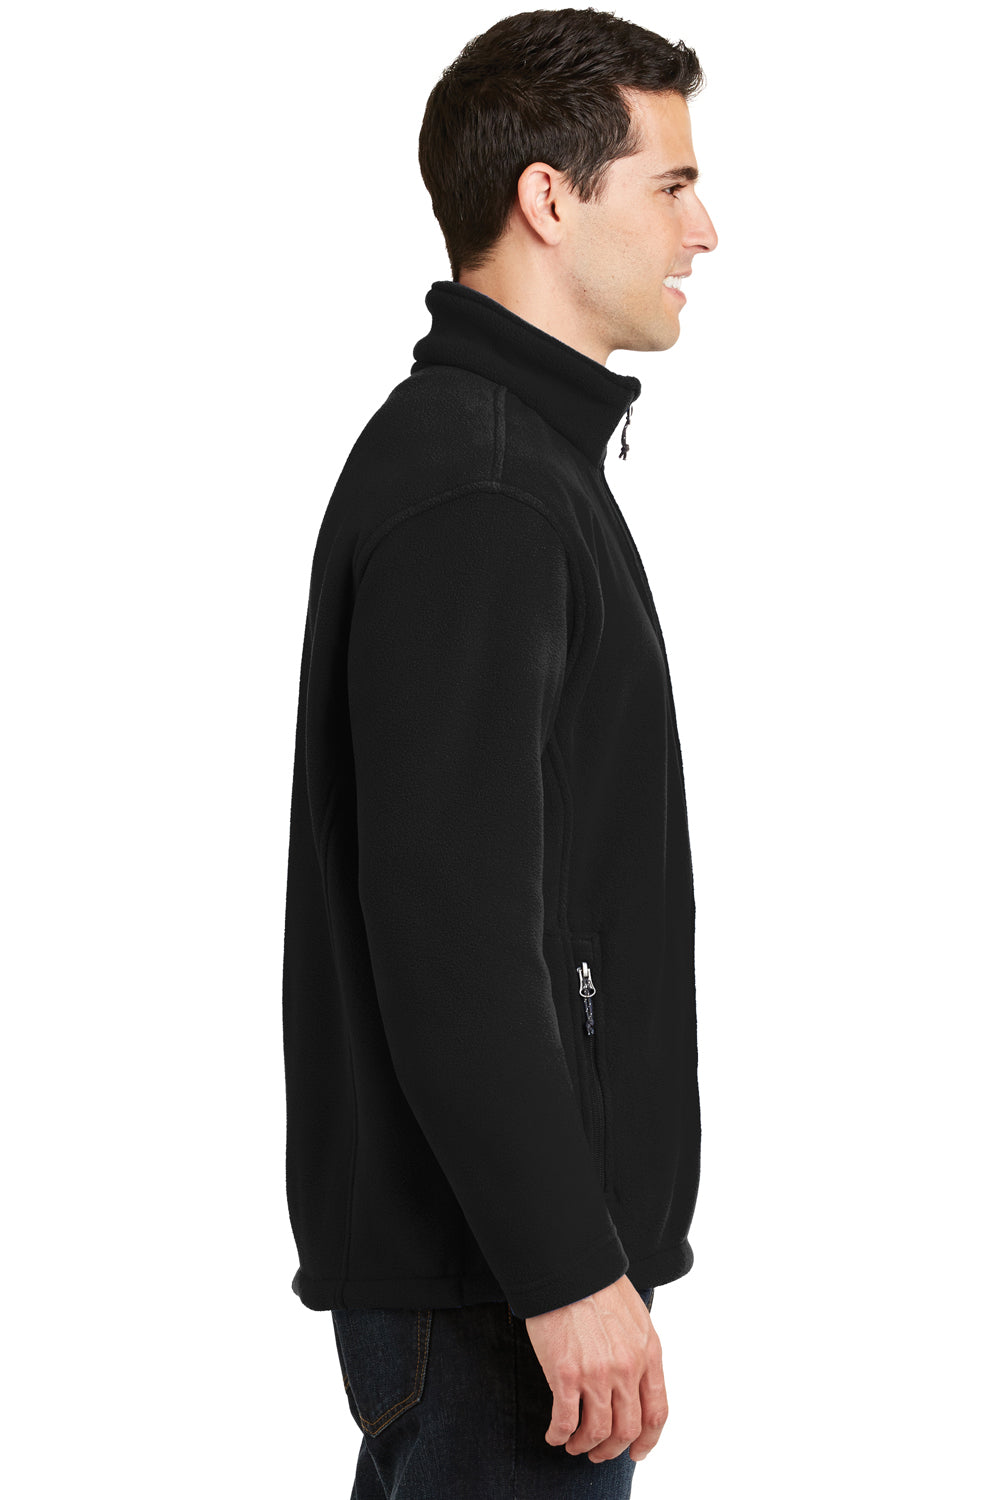 Port Authority F217 Mens Full Zip Fleece Jacket Black Side